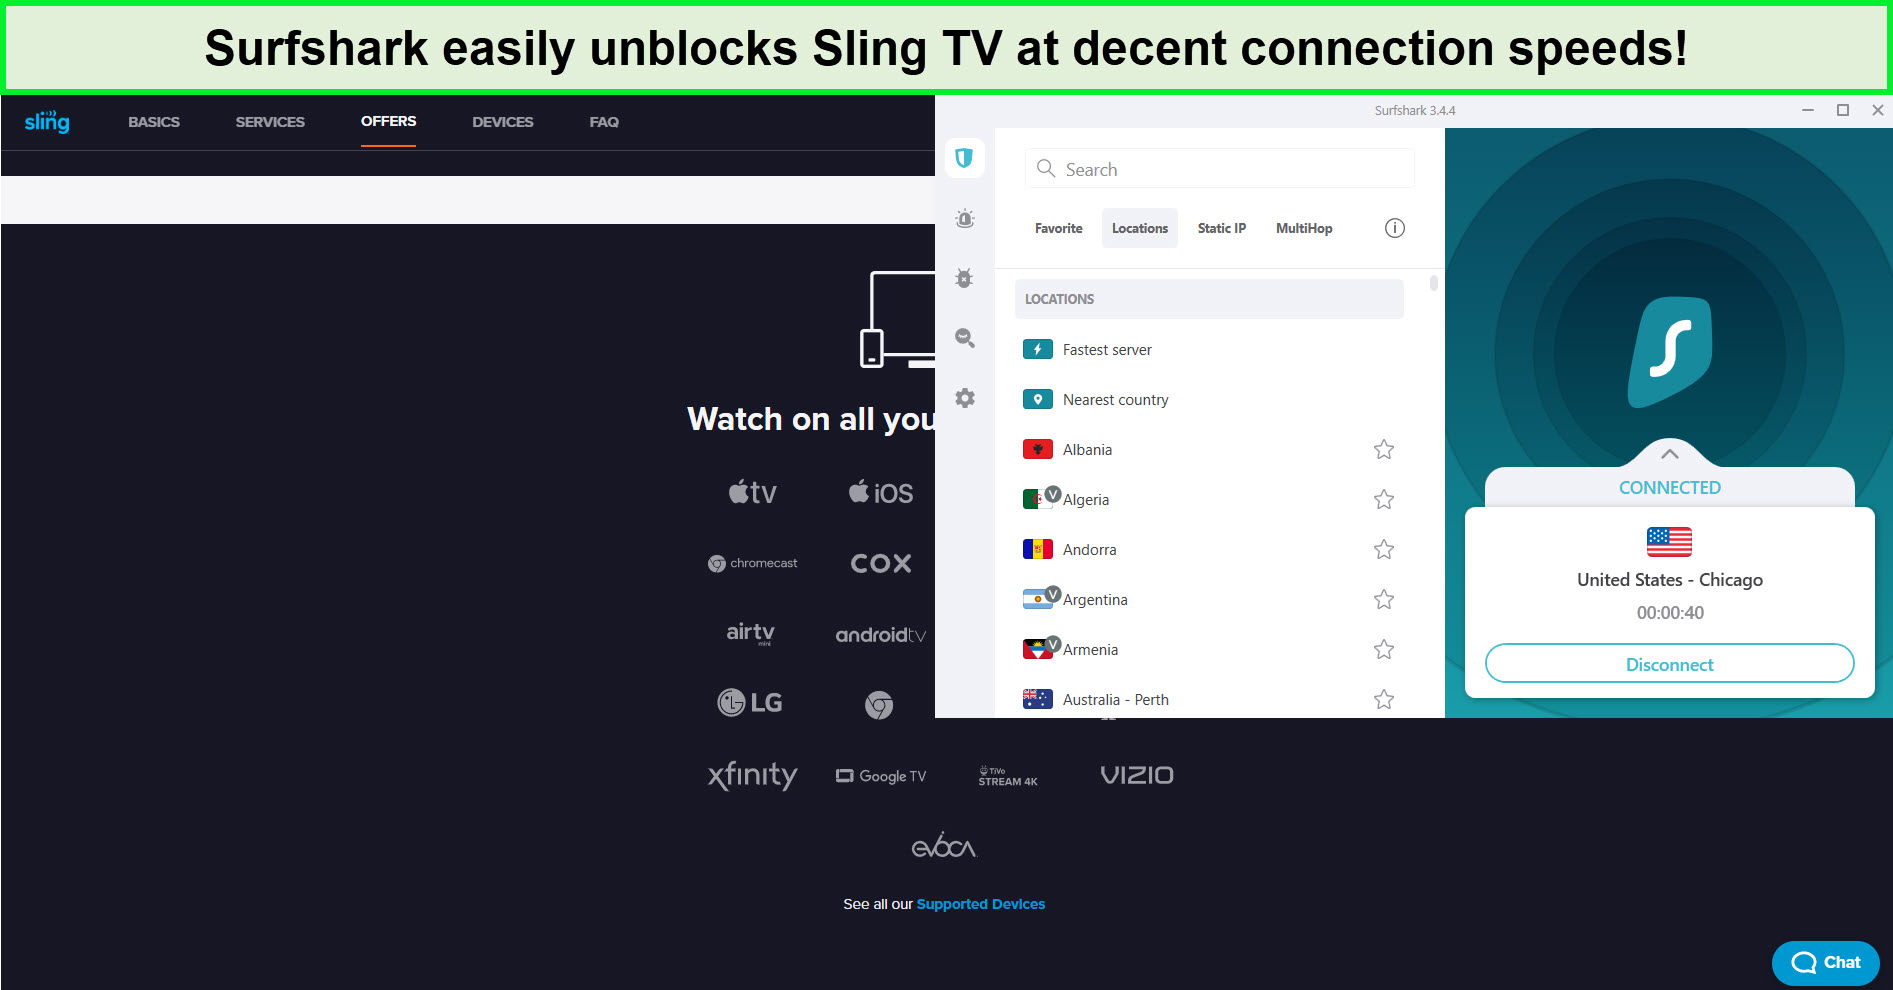 surfshark-unblocks-India-sling-tv